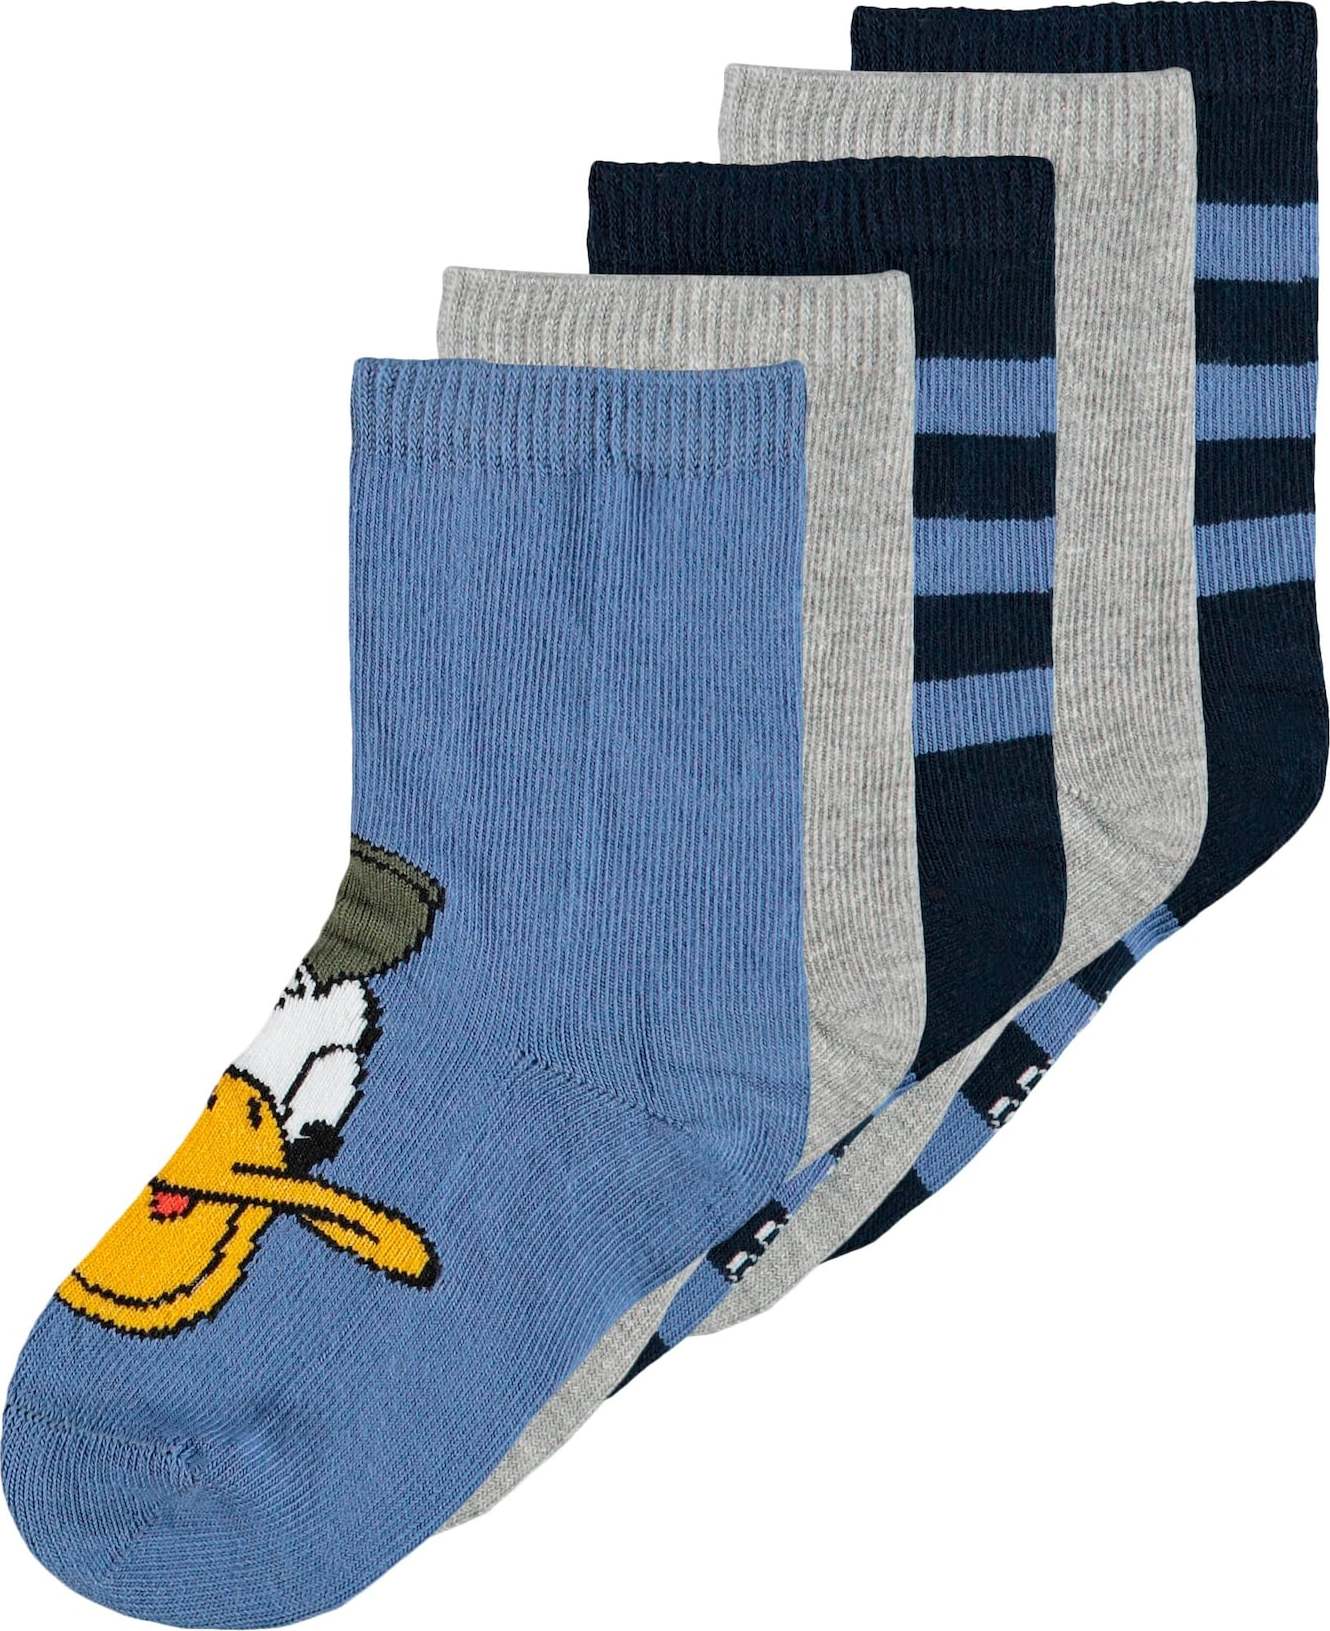 NAME IT Ponožky 'Ahili' námořnická modř / zlatě žlutá / šedá / bílá